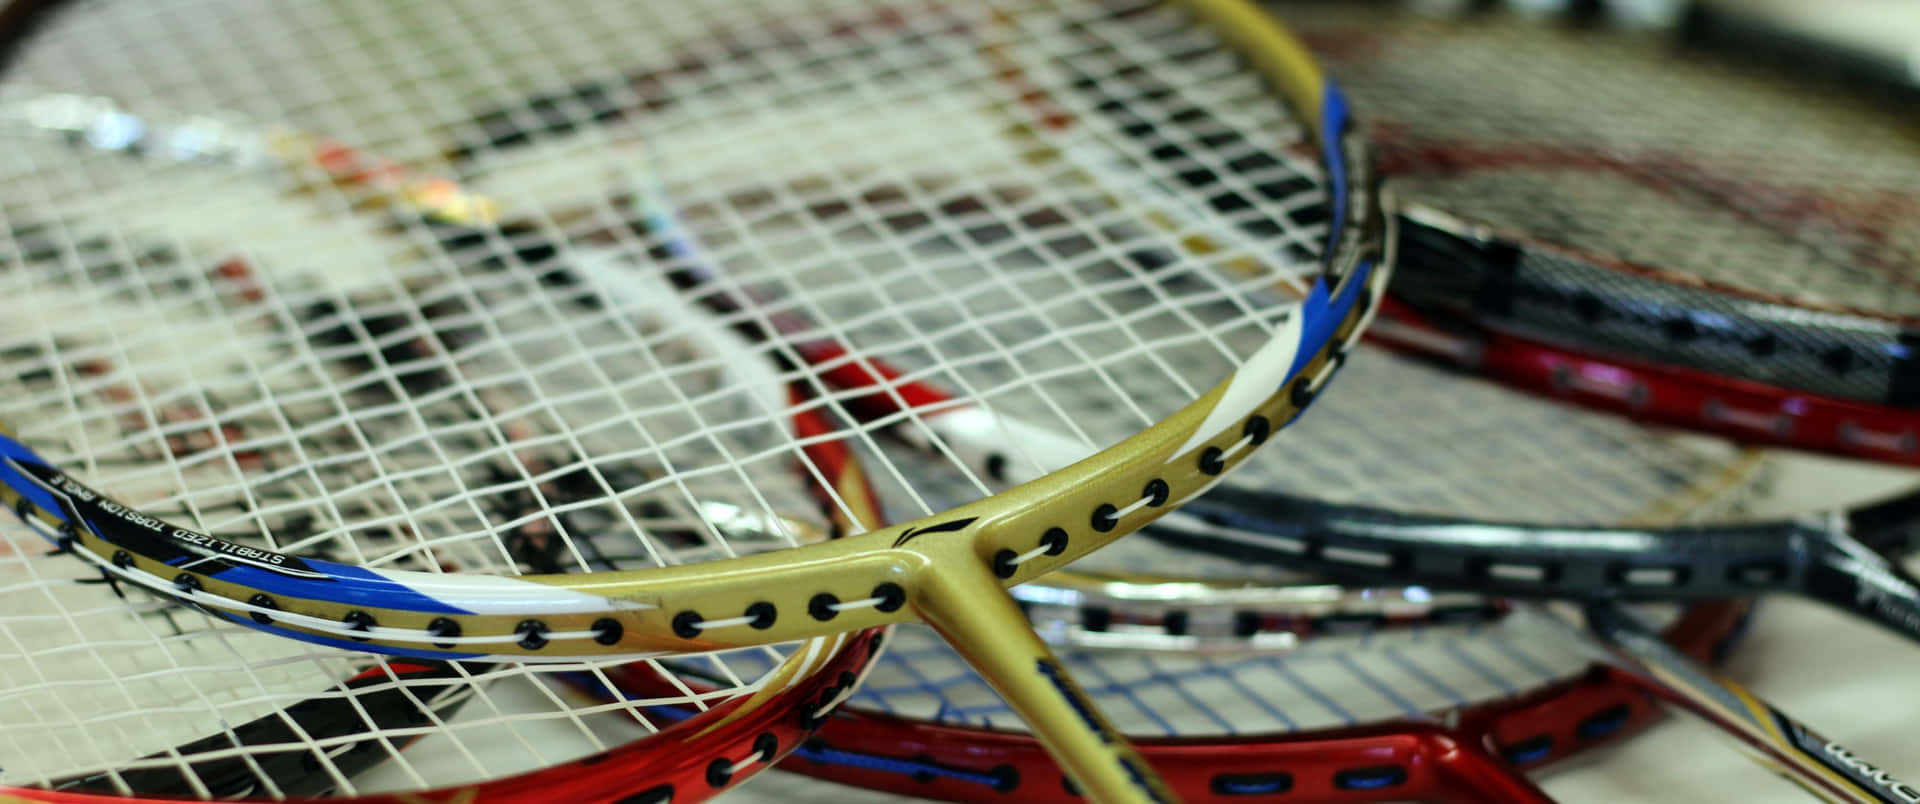 Badmintonmatchensintensitet I Hög Upplösning.